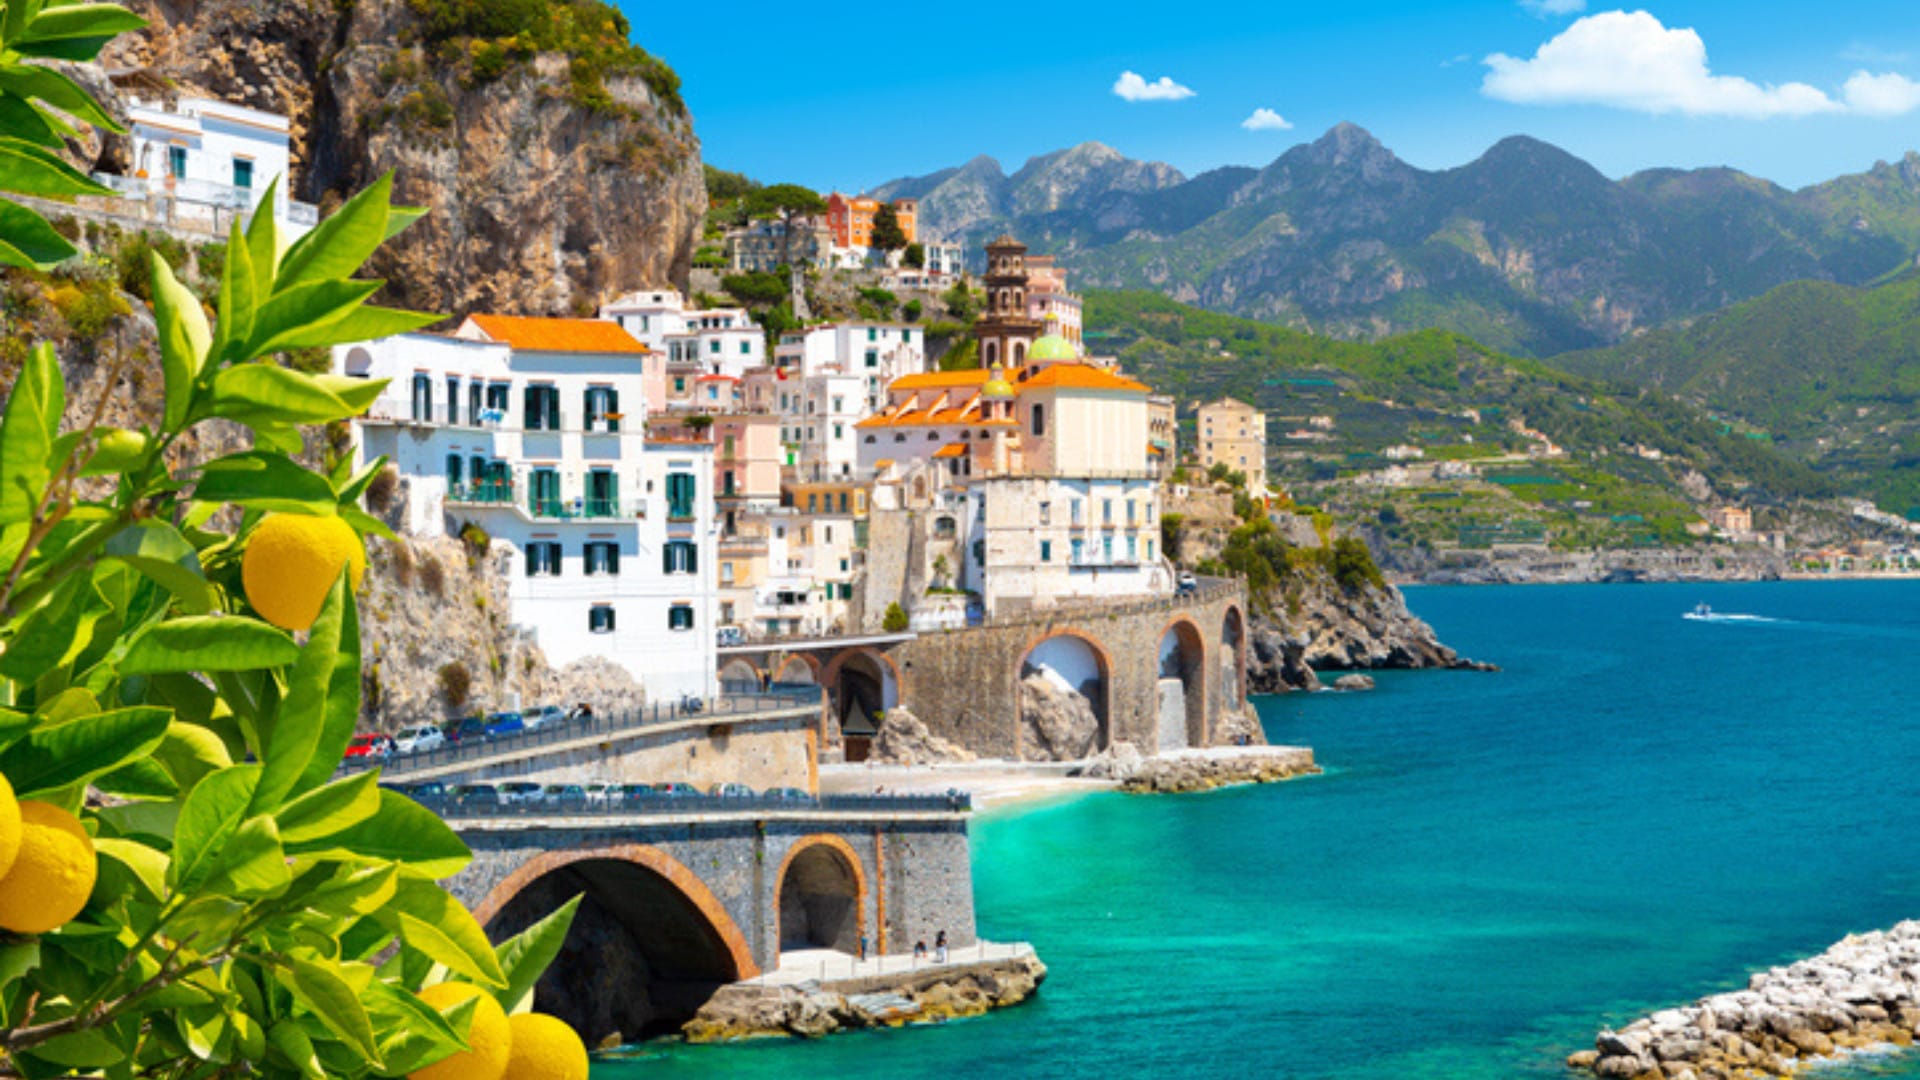 Image of Amalfi Coast